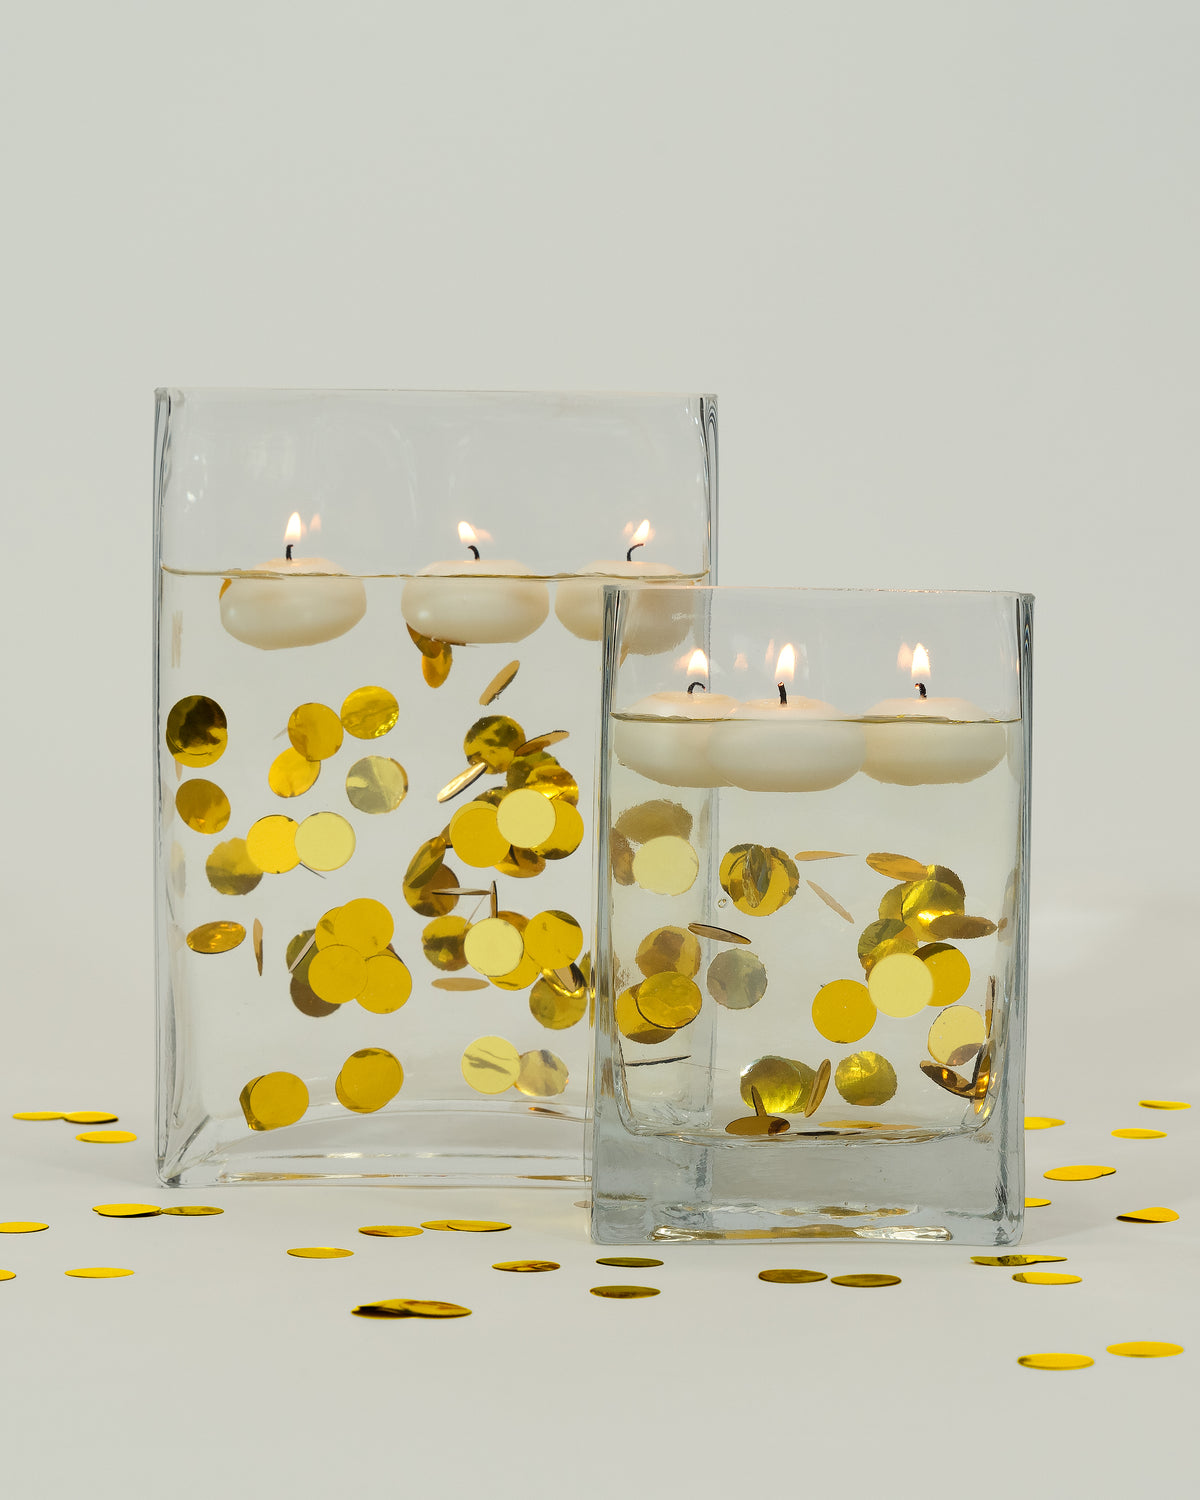 קונפטי "צף" זהב מתכתי עם אפשרות לאורות פיות - קישוטי אגרטל ופיזור שולחן